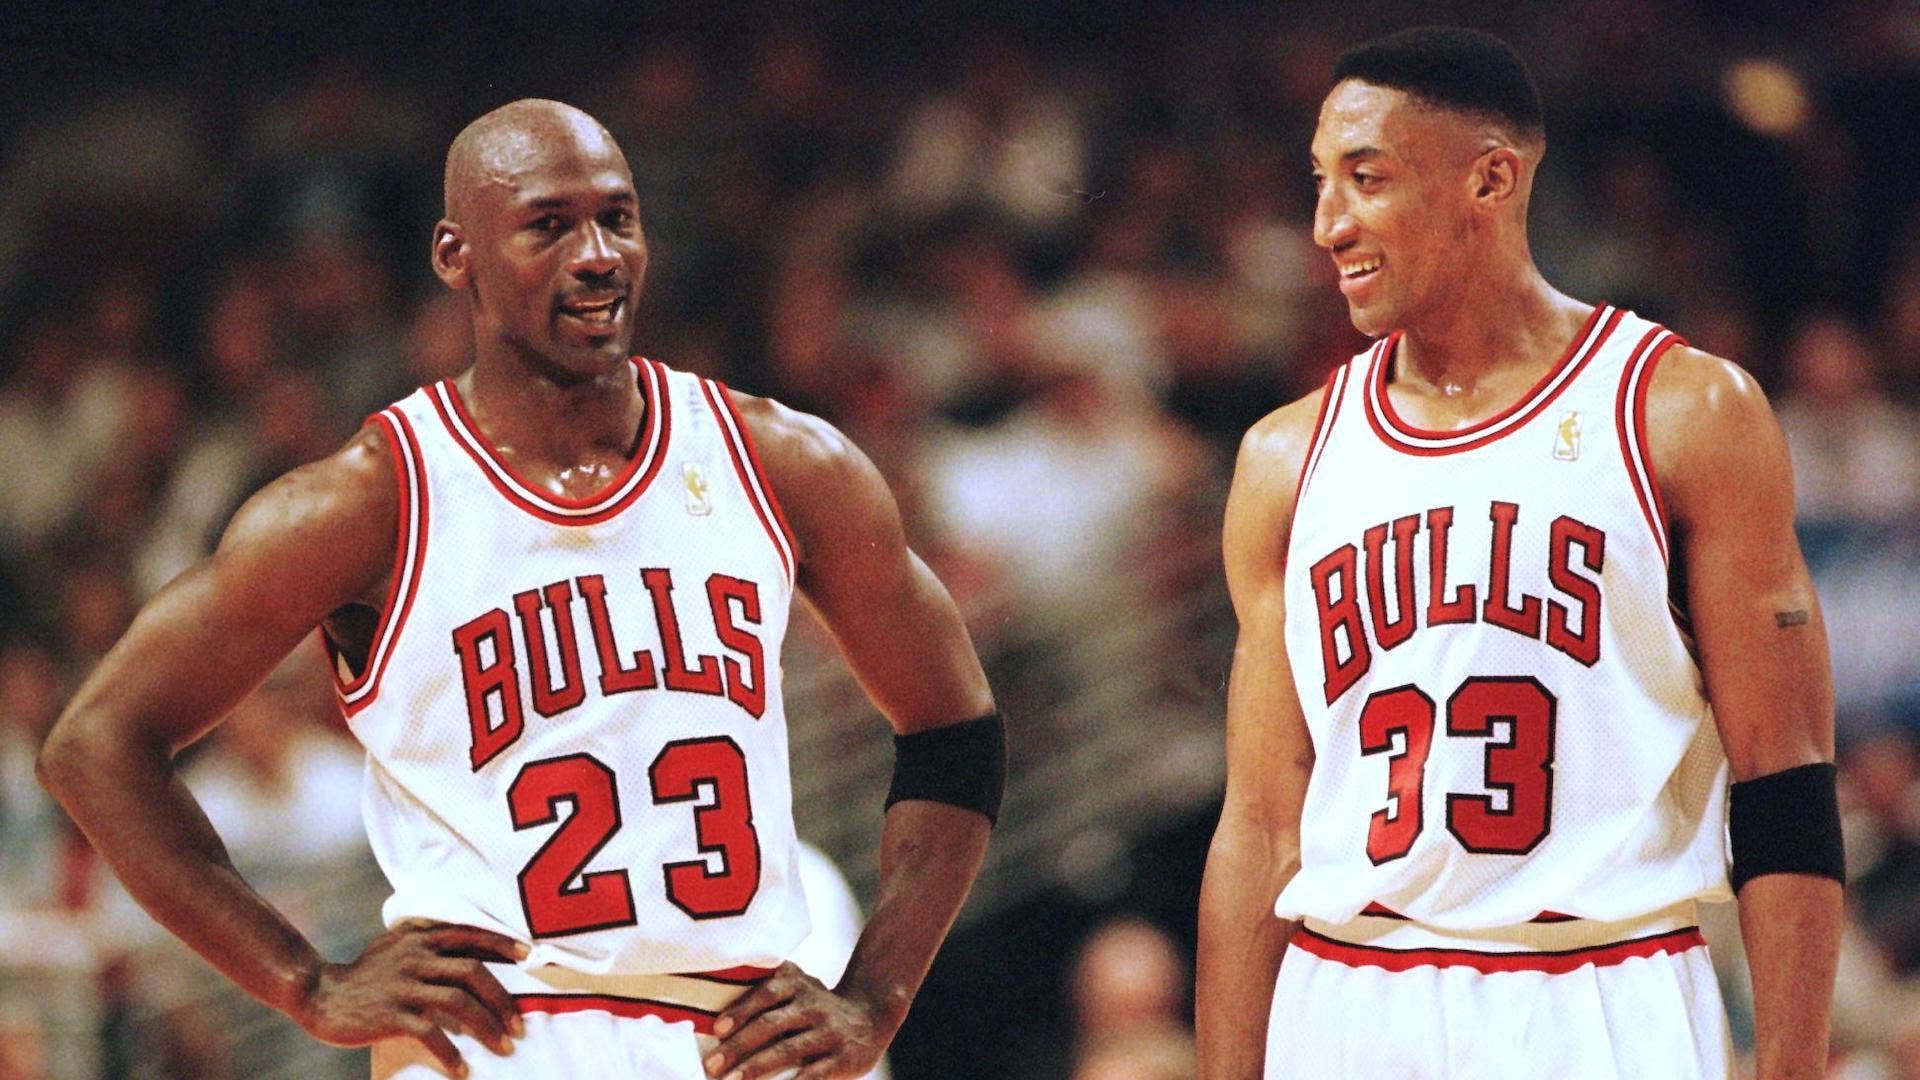 Funko POP! Sports Legends Collectors Set: Michael Jordan, Muhammad